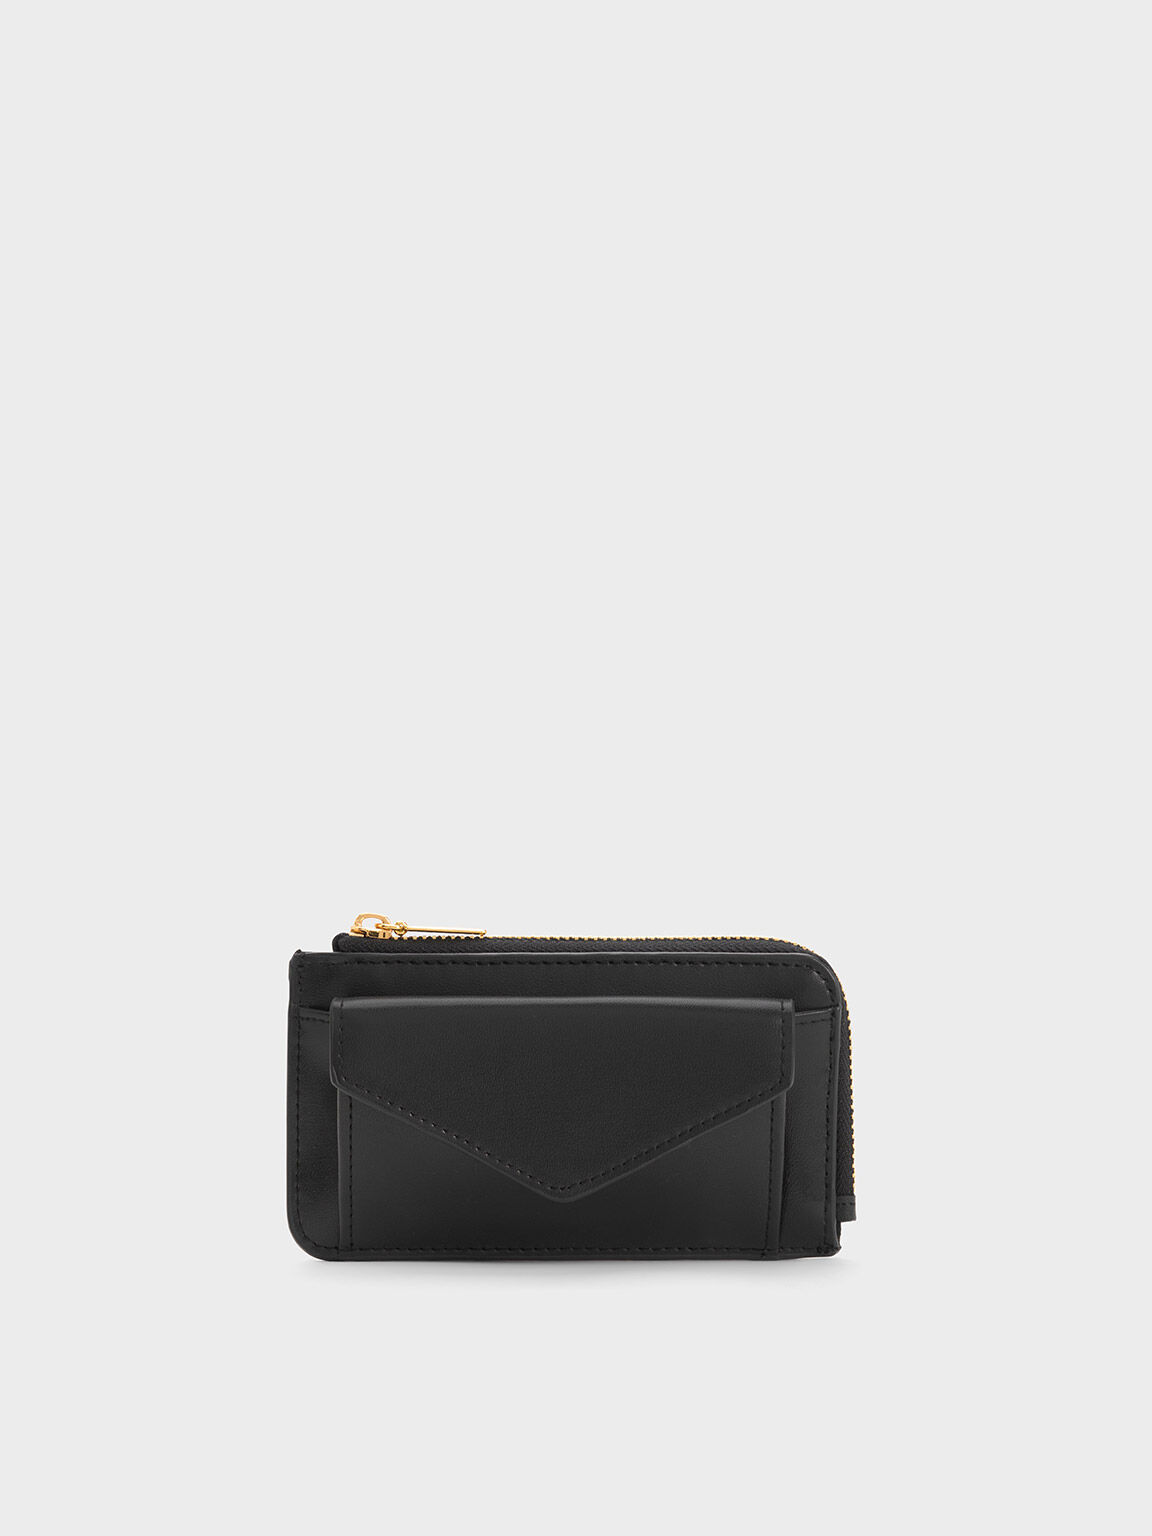 Black leather zip pocket cardholder